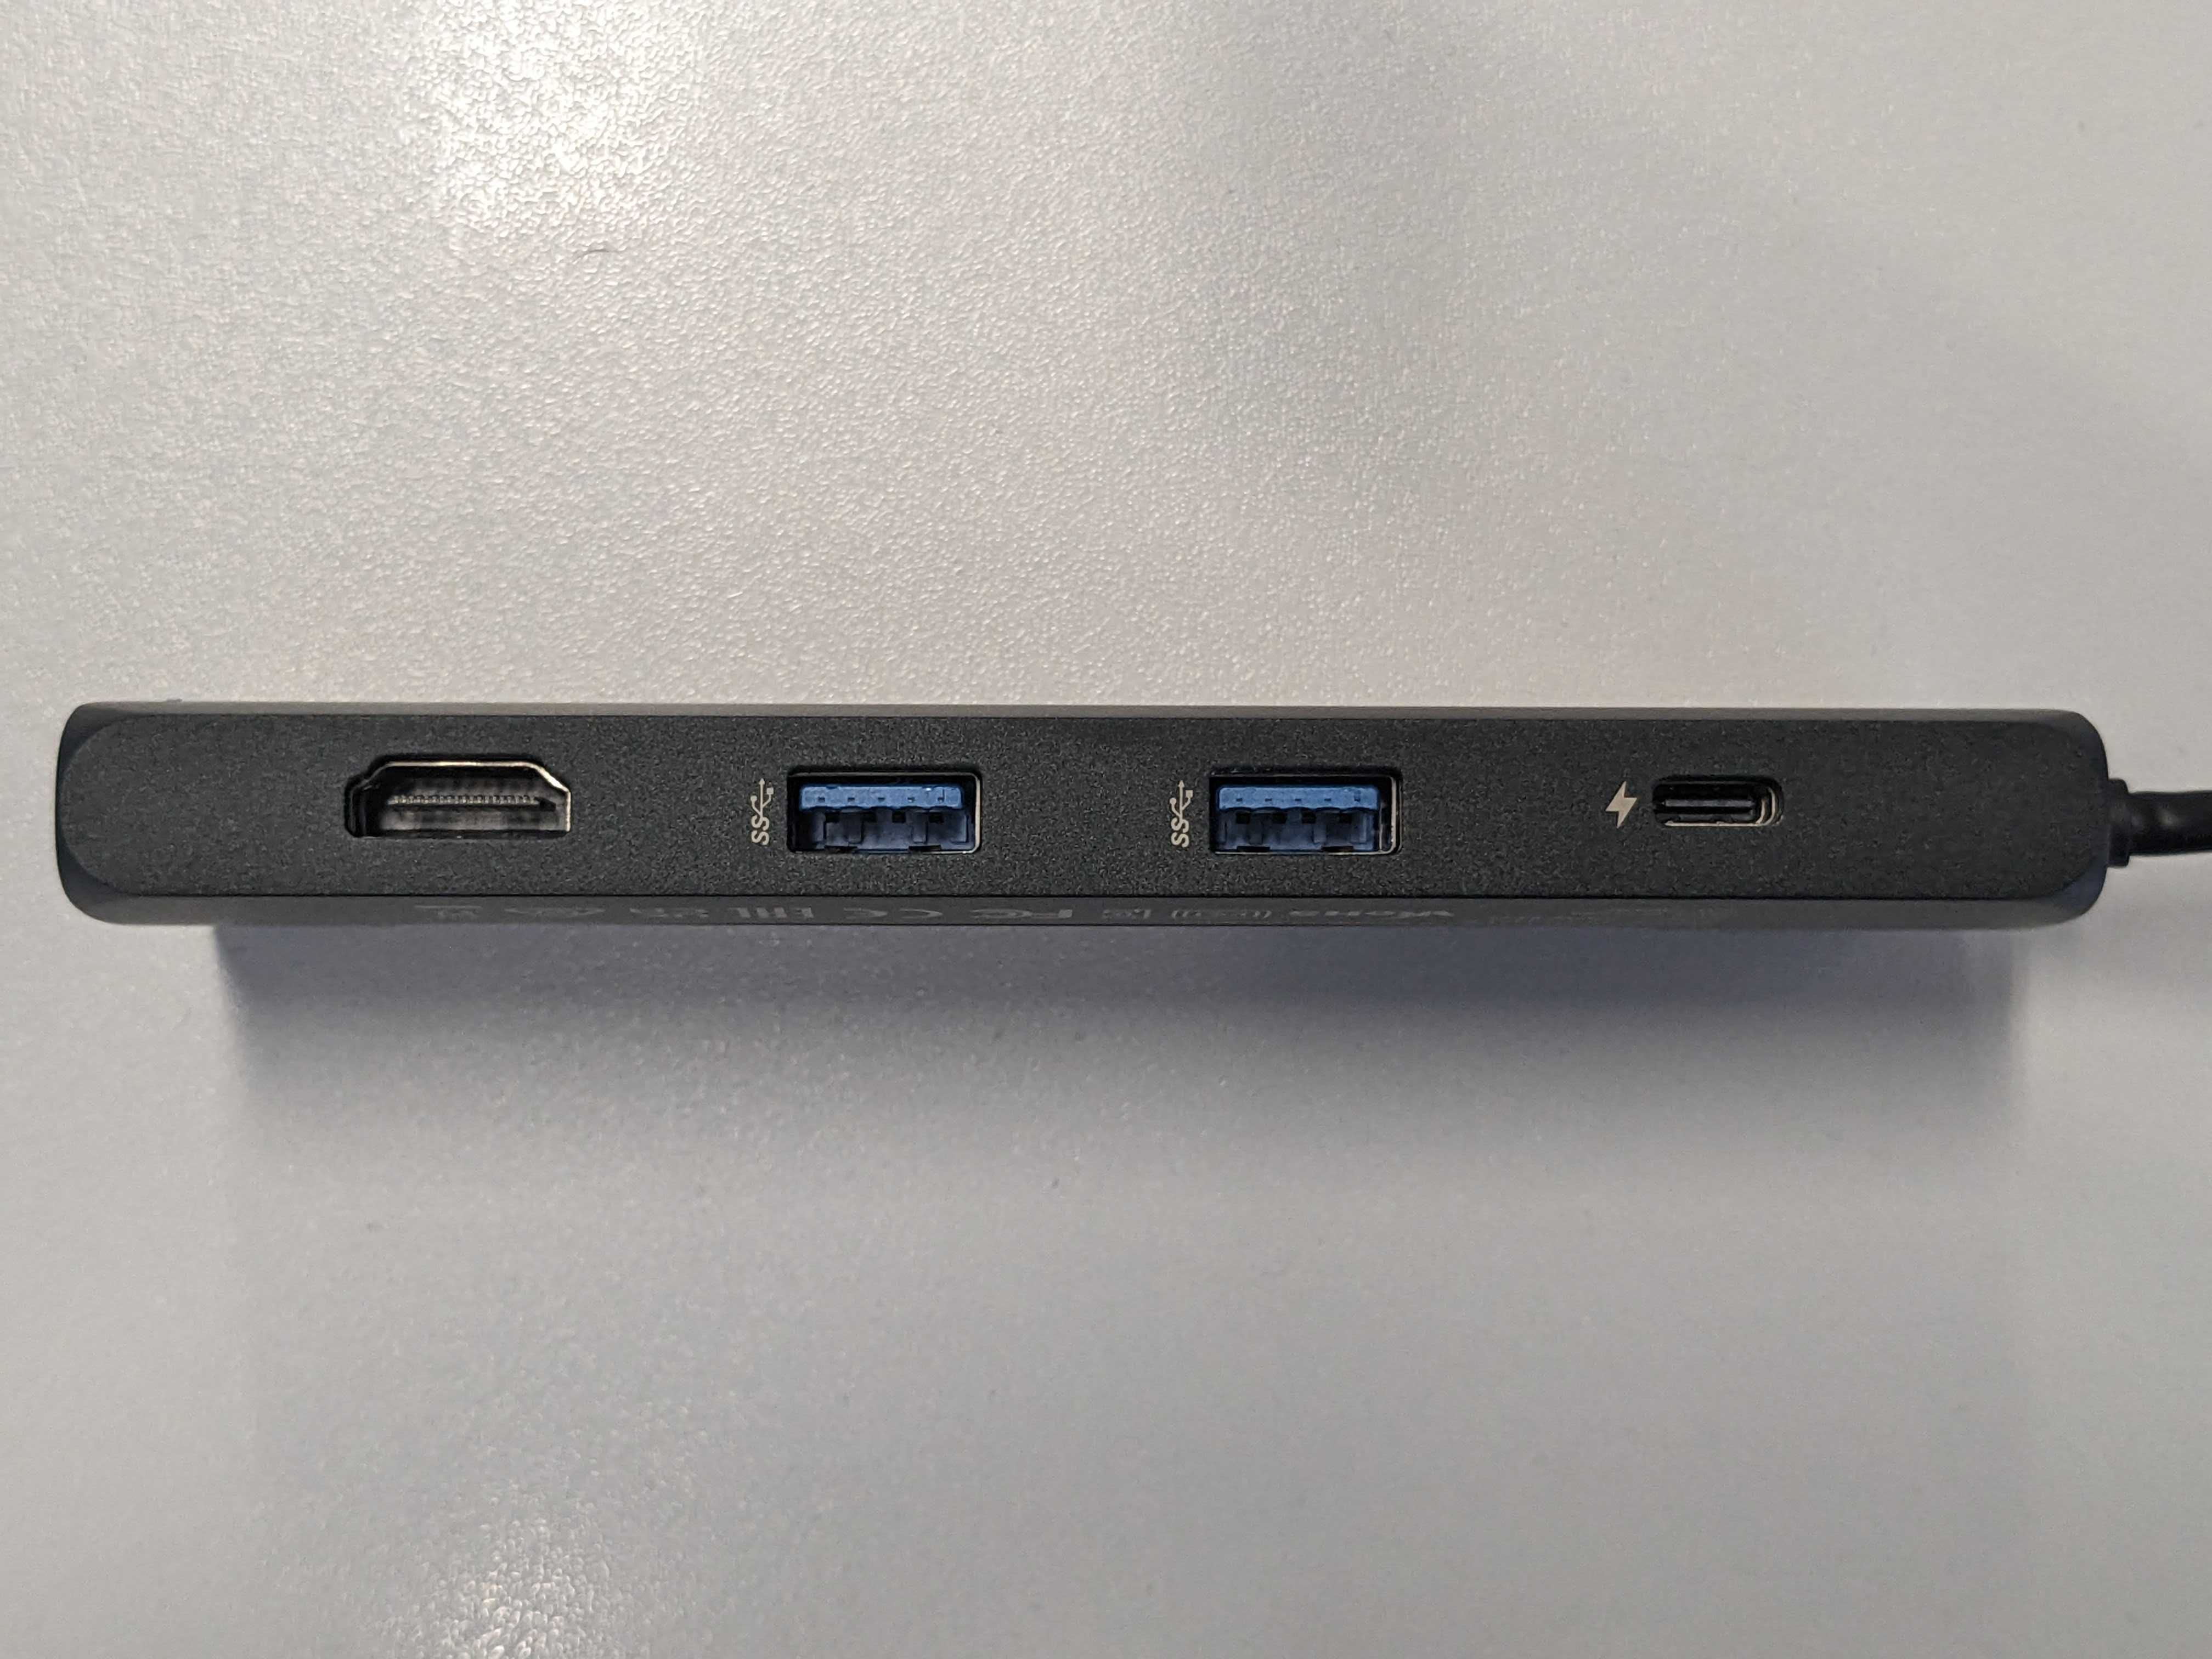 Satechi – USB-C Adapter z miejscem na zewnętrzny dysk SSD